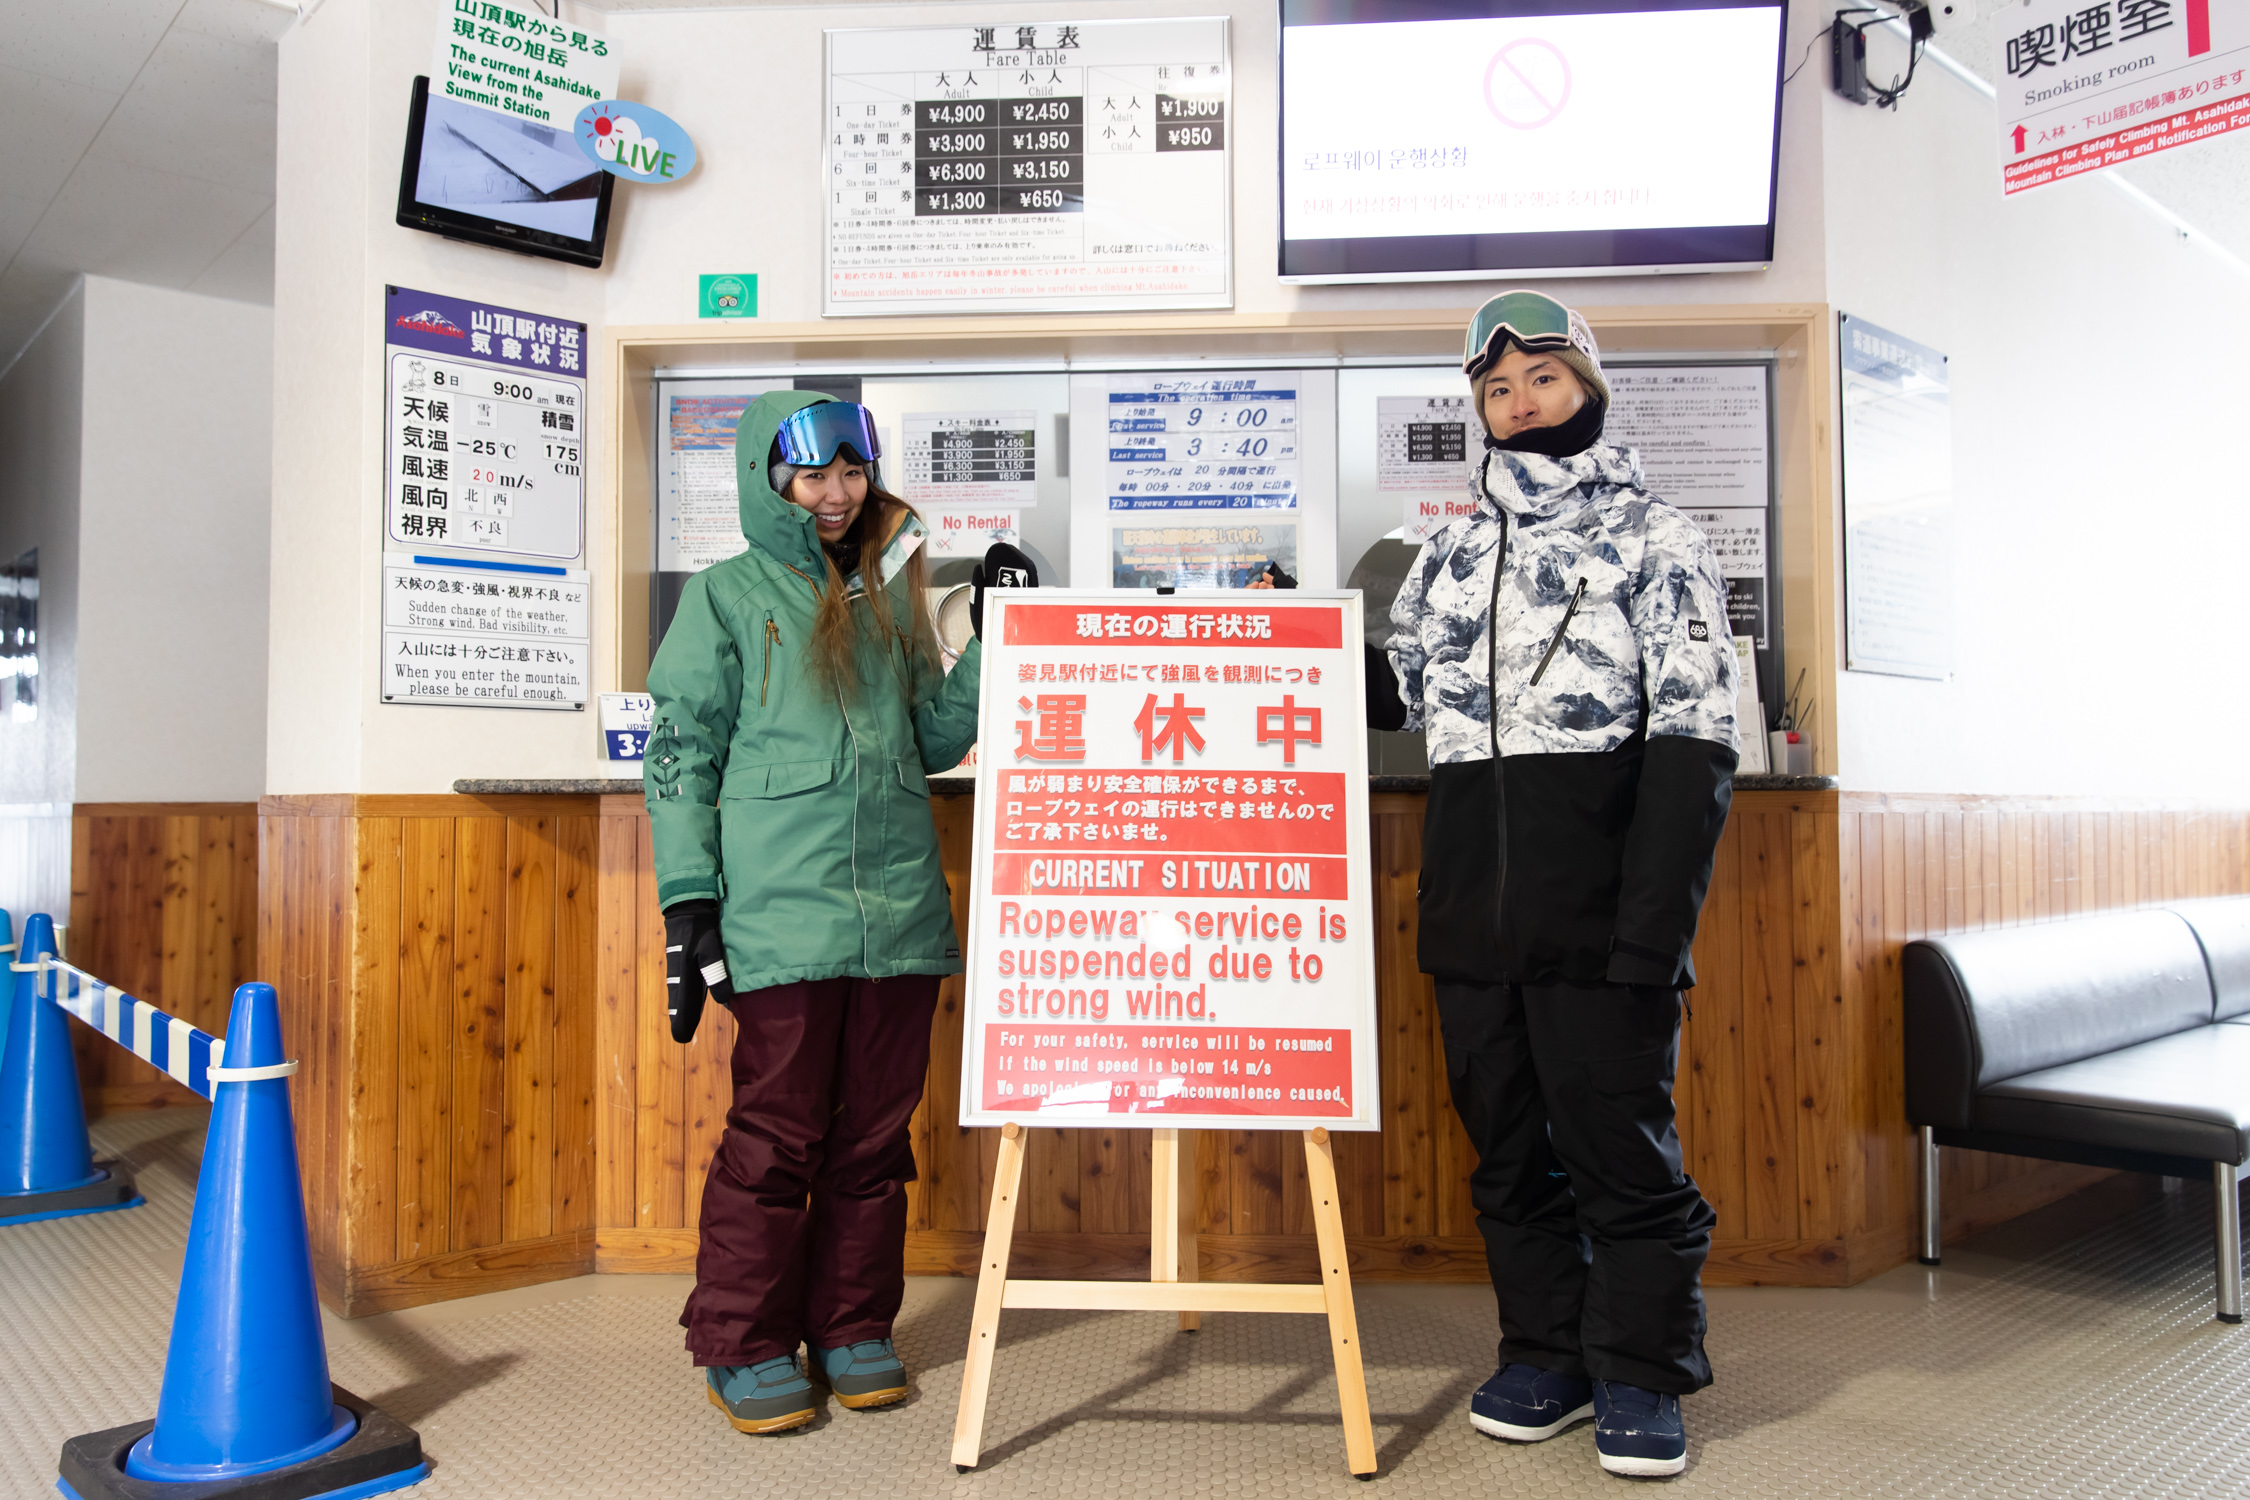 售票處暫停的招牌。左邊是山頂站附近天氣條件下溫度-25℃，風速20m/s的指示。